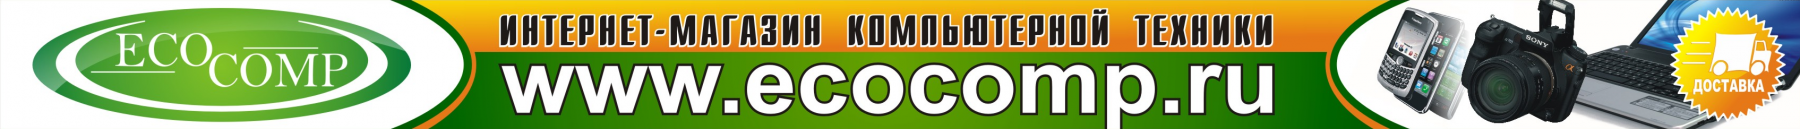 ecocomp.ru интернет-магазин ступино, кашира. ноутбуки, телевизоры, видео, фото, компьютеры